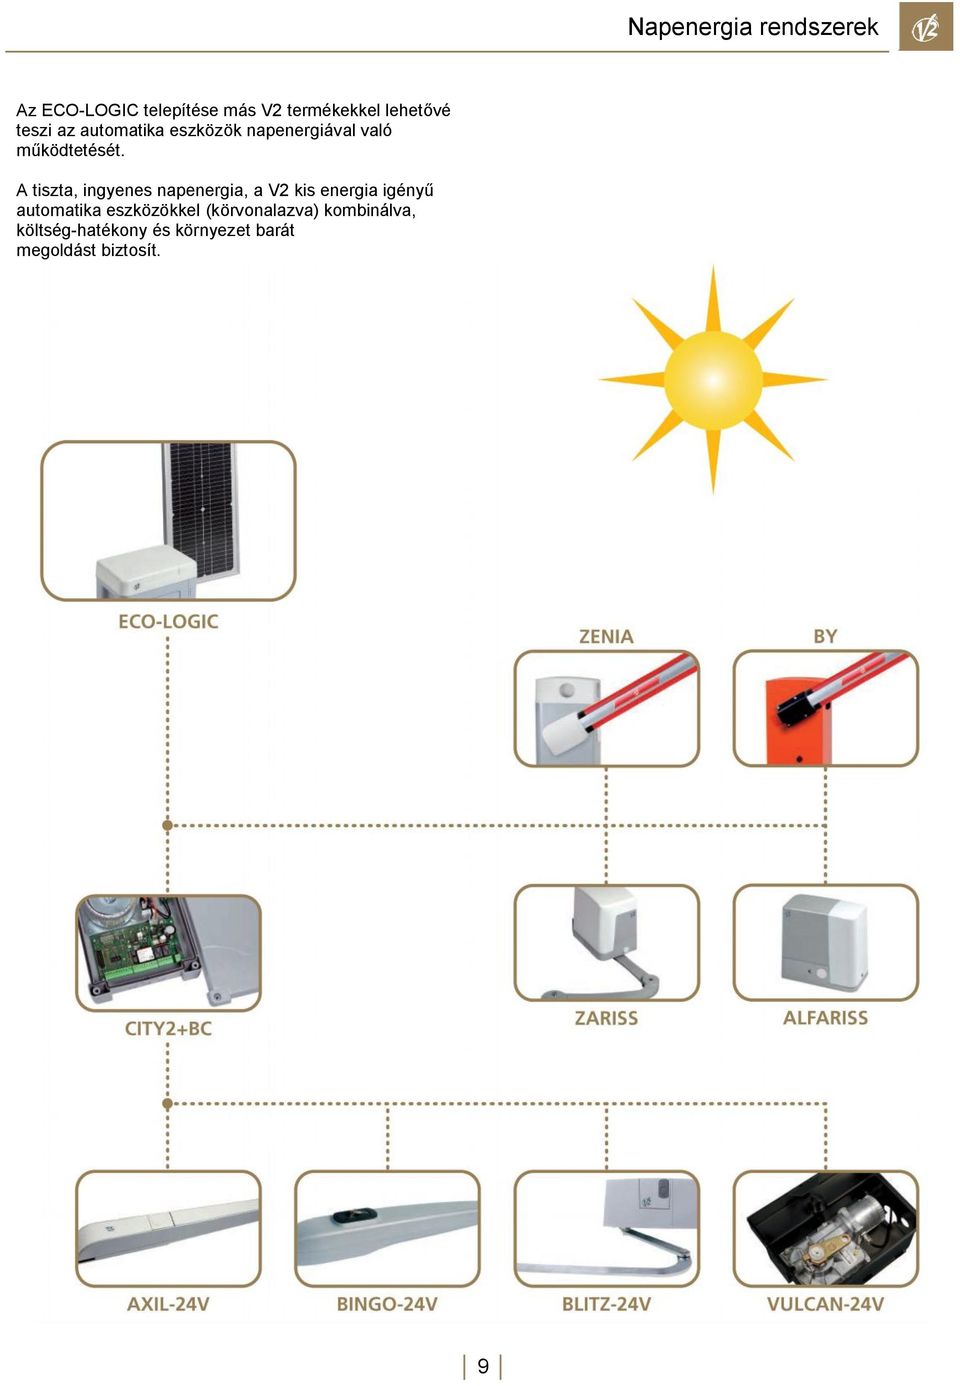 A tiszta, ingyenes napenergia, a V2 kis energia igényű automatika